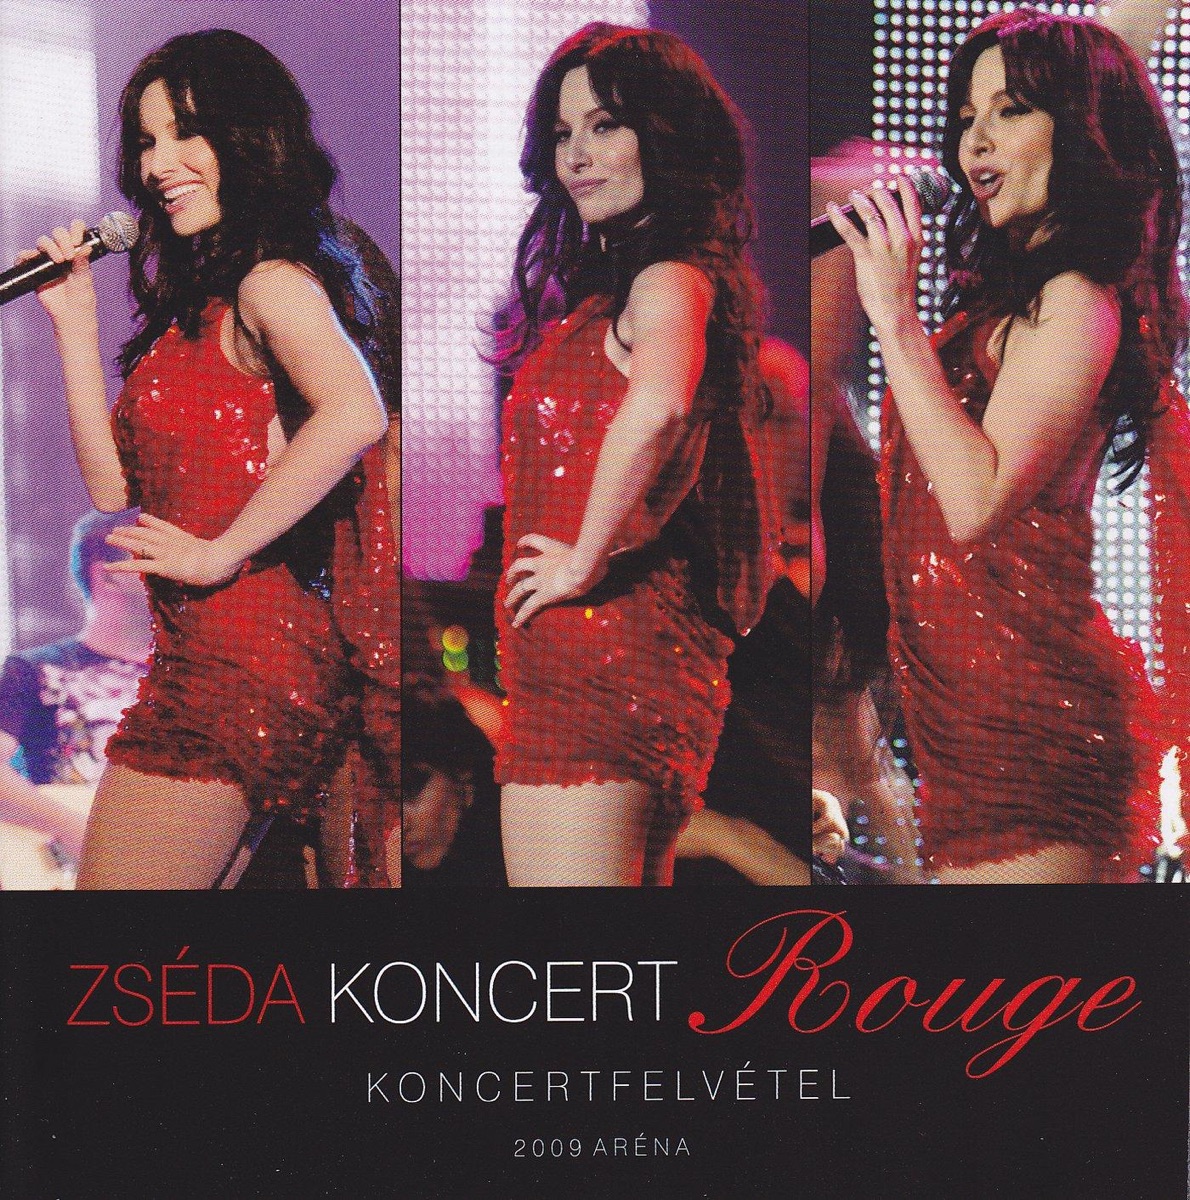 Koncert Rouge (Live) - Album by Zséda - Apple Music